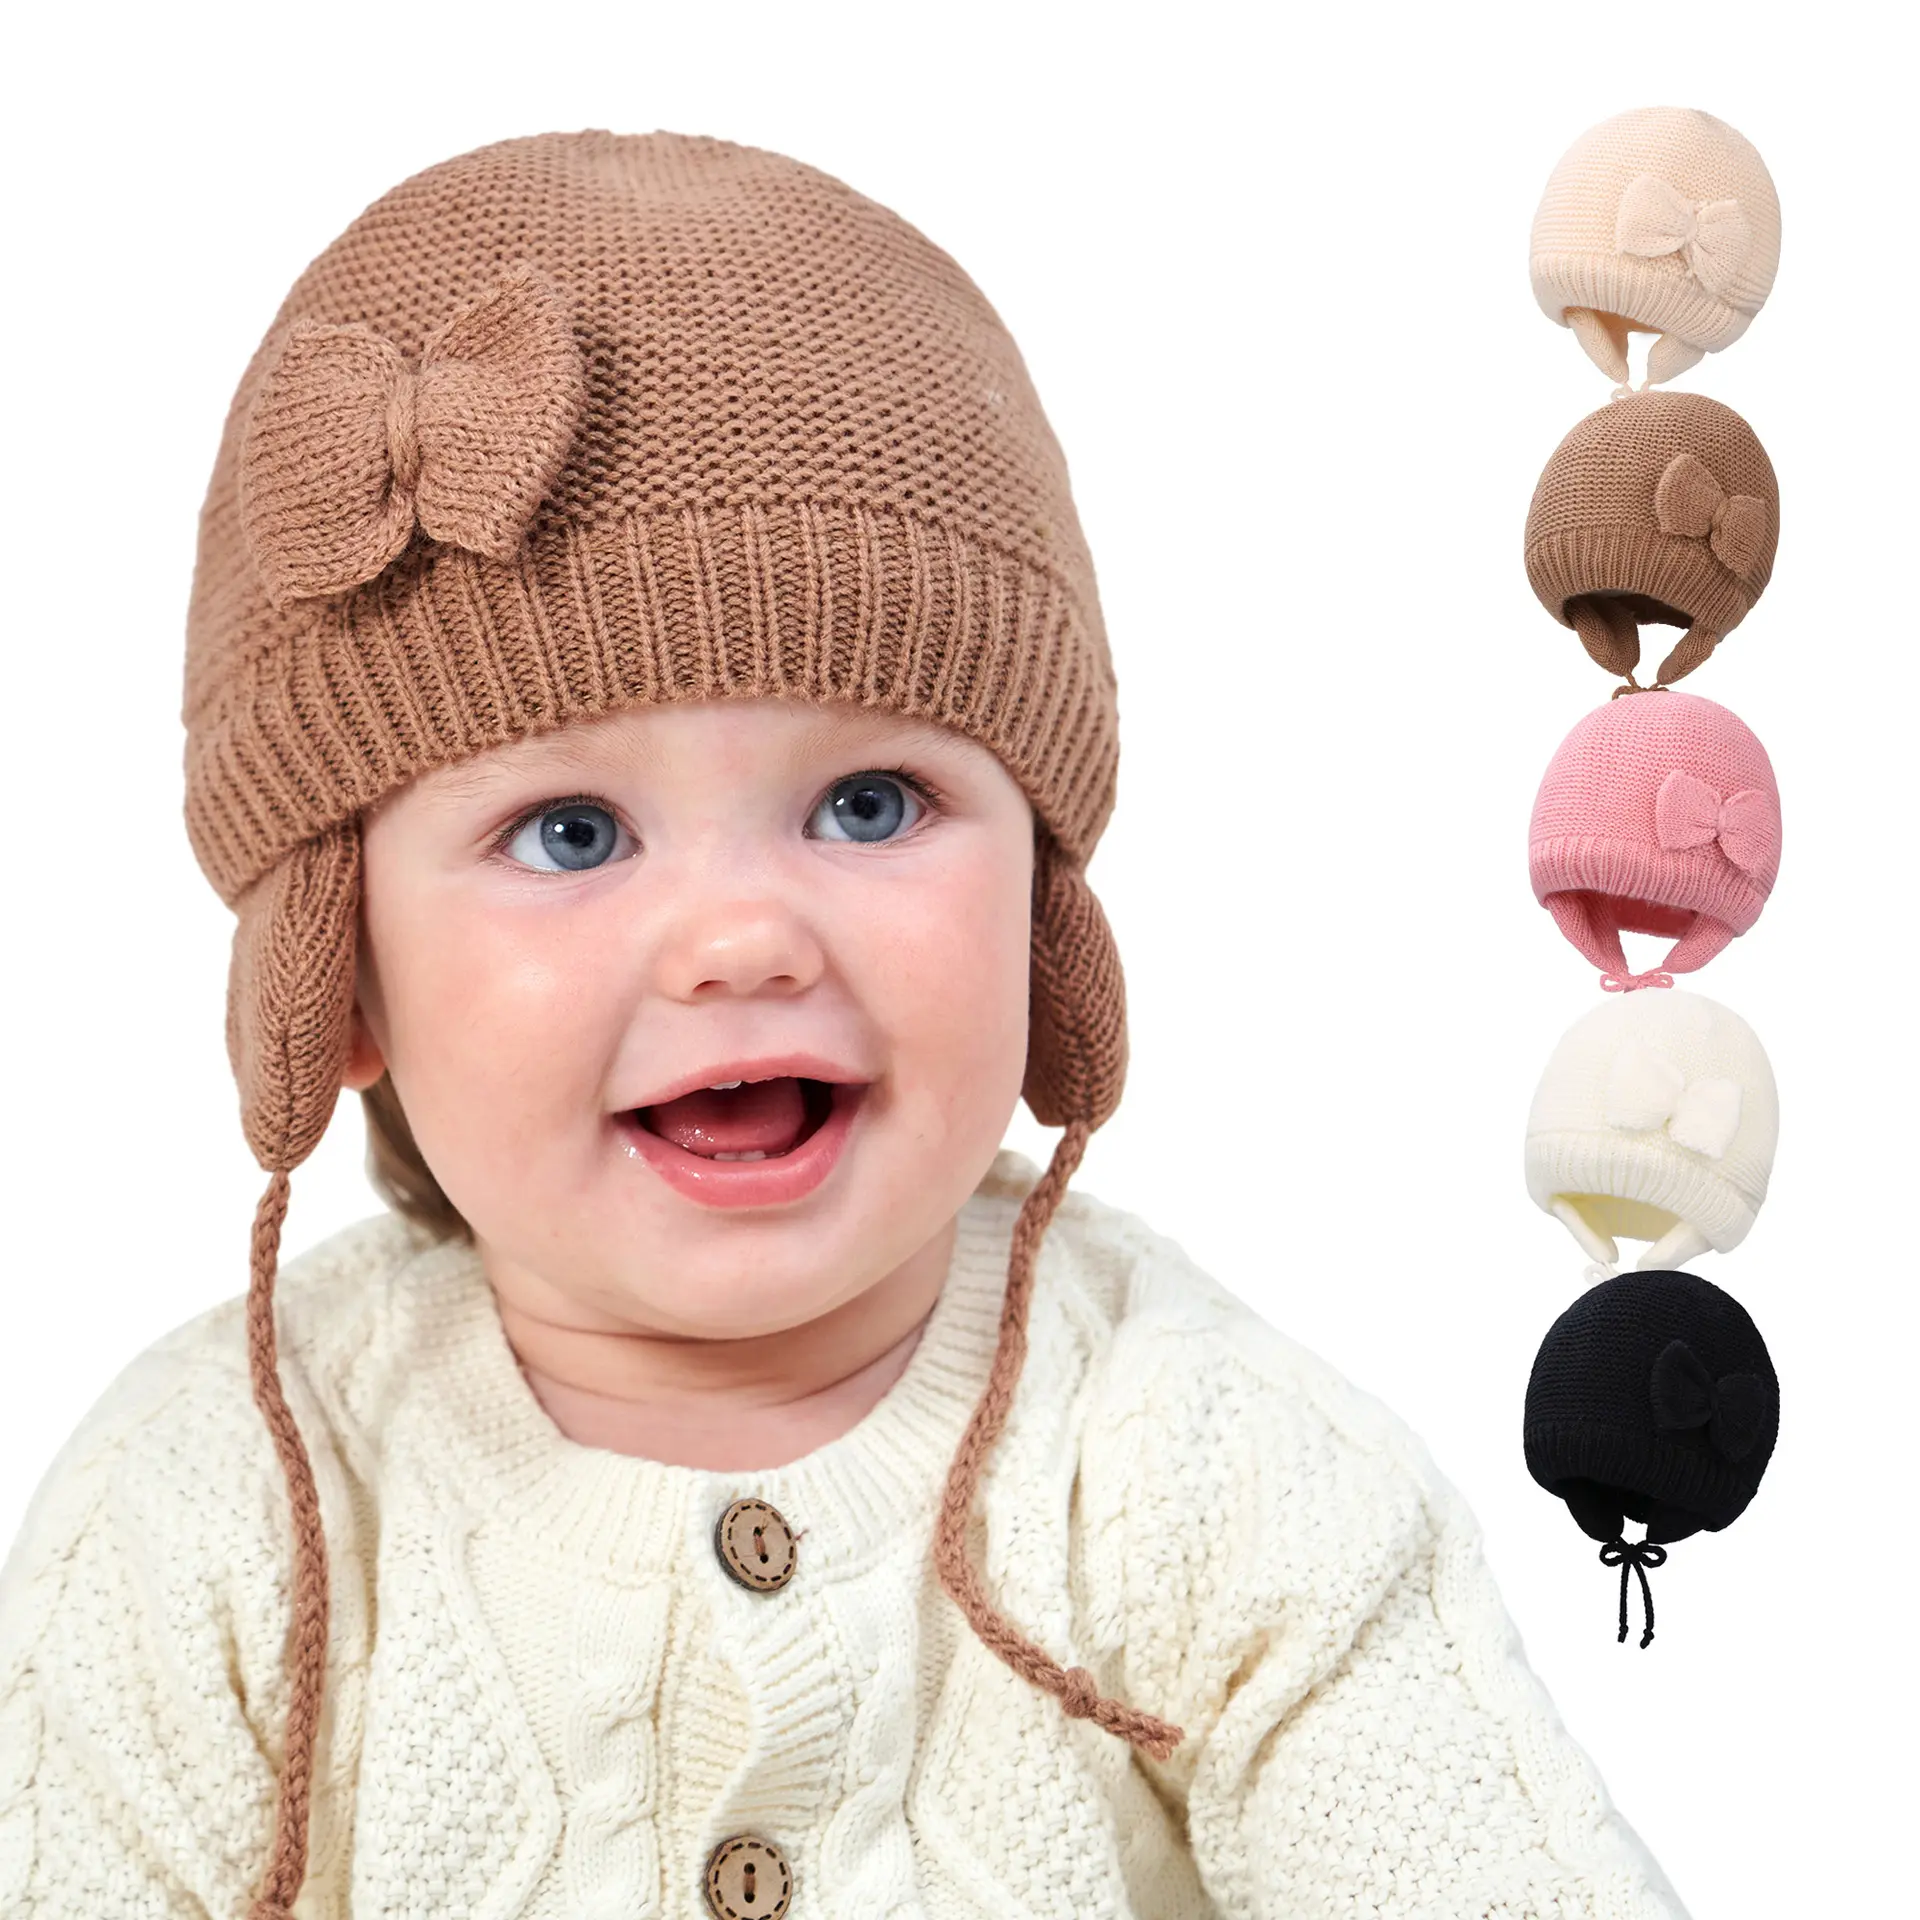 HJH446 neonato bambini ragazze ragazzi berretti berretto addensato caldo protezione dell'orecchio cappello lavorato a maglia carino adorabile papillon cappelli invernali